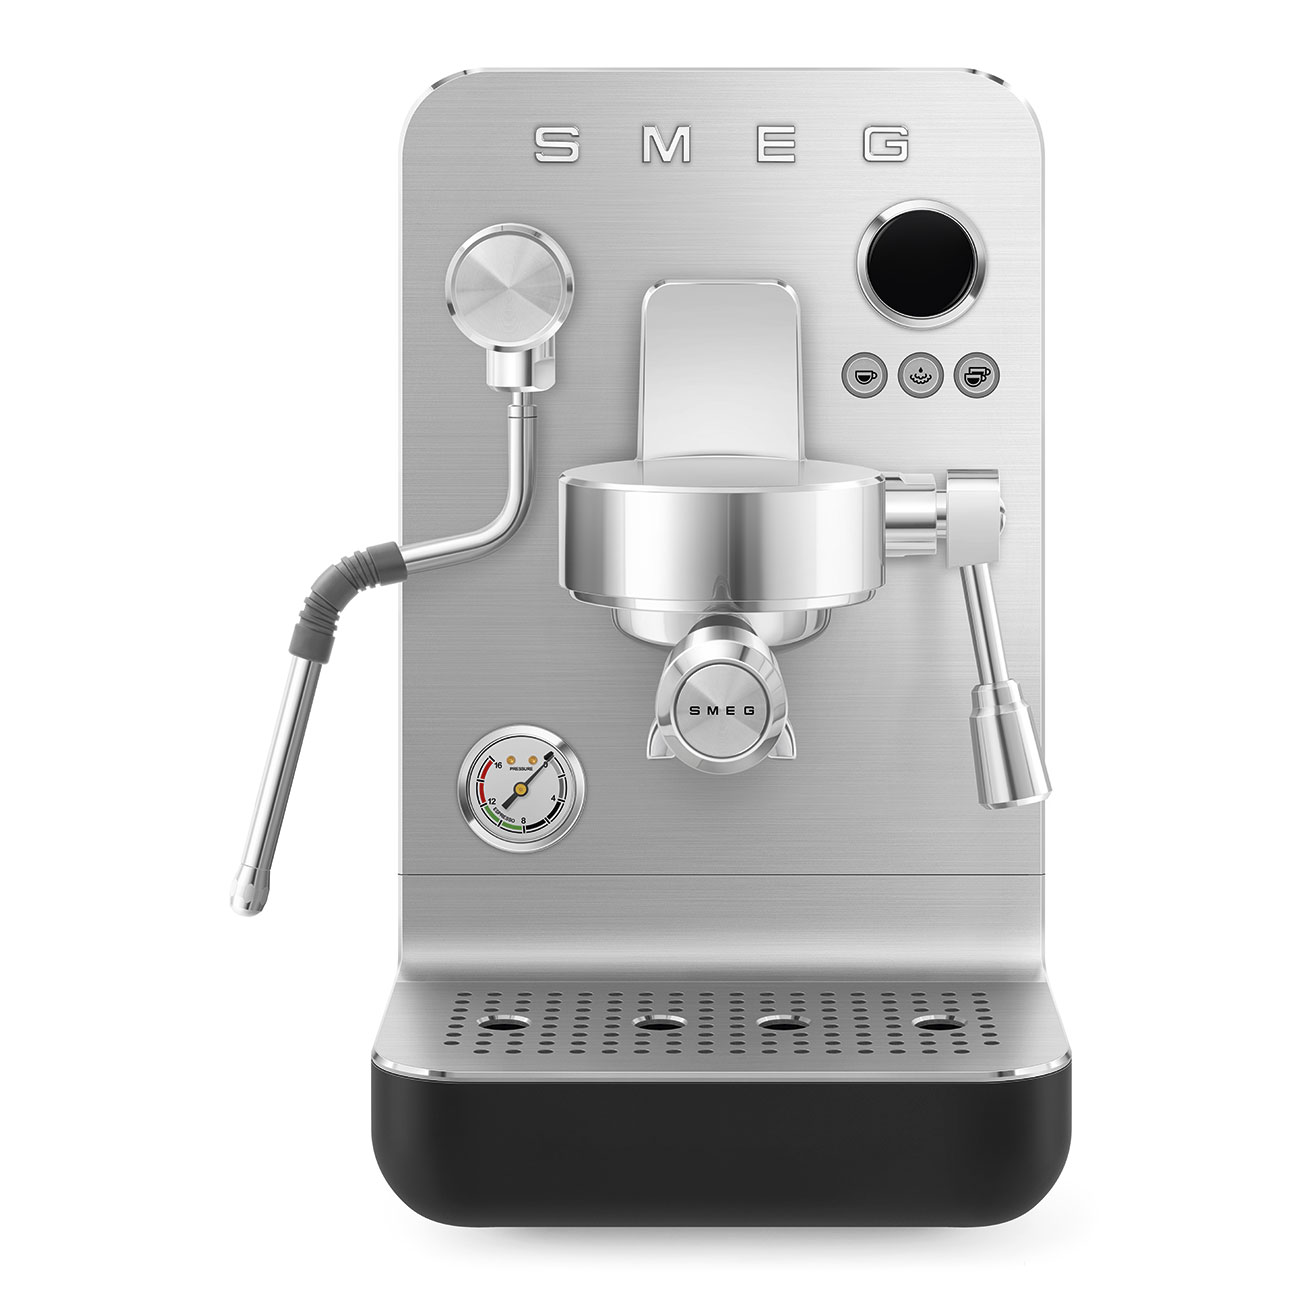 Black Minipro espresso coffee machine_1